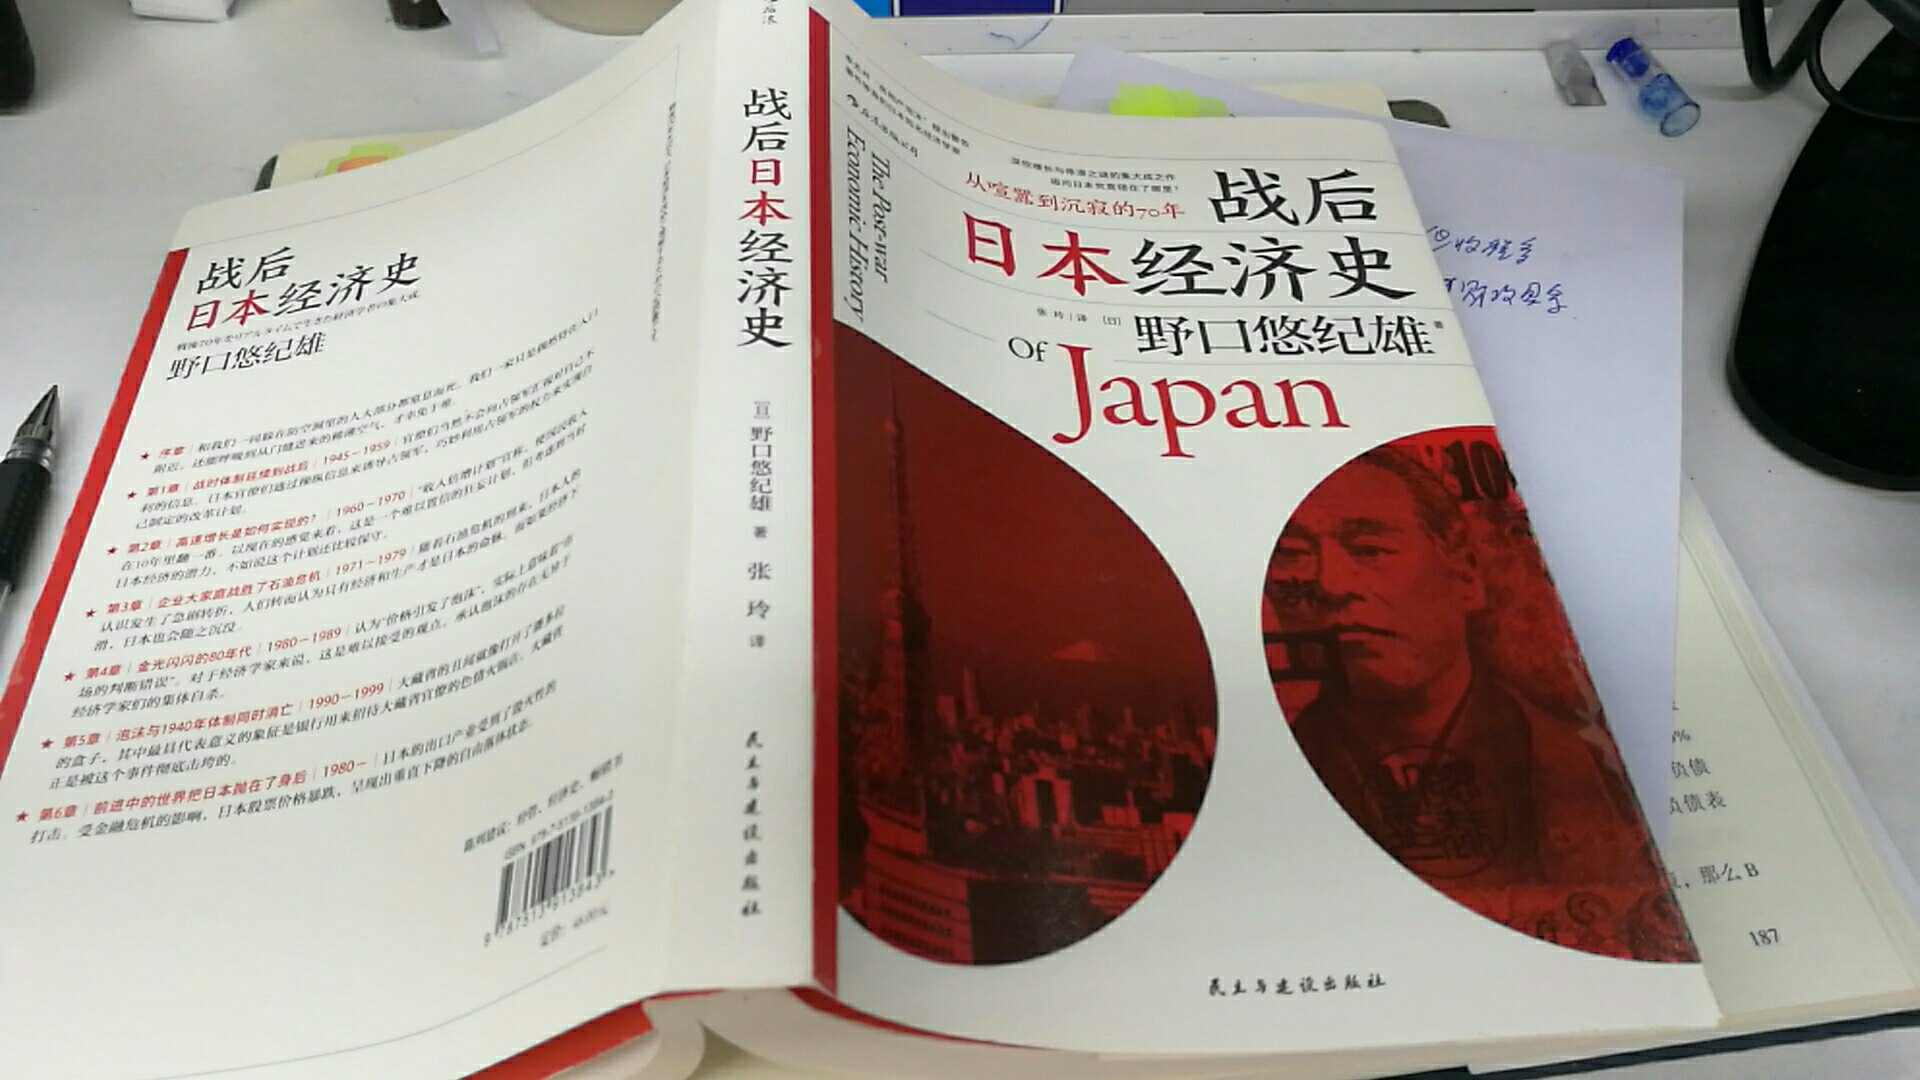 一口气读完 作者以亲身经历叙述战后日本经济史 语言平实 观点明确 好书